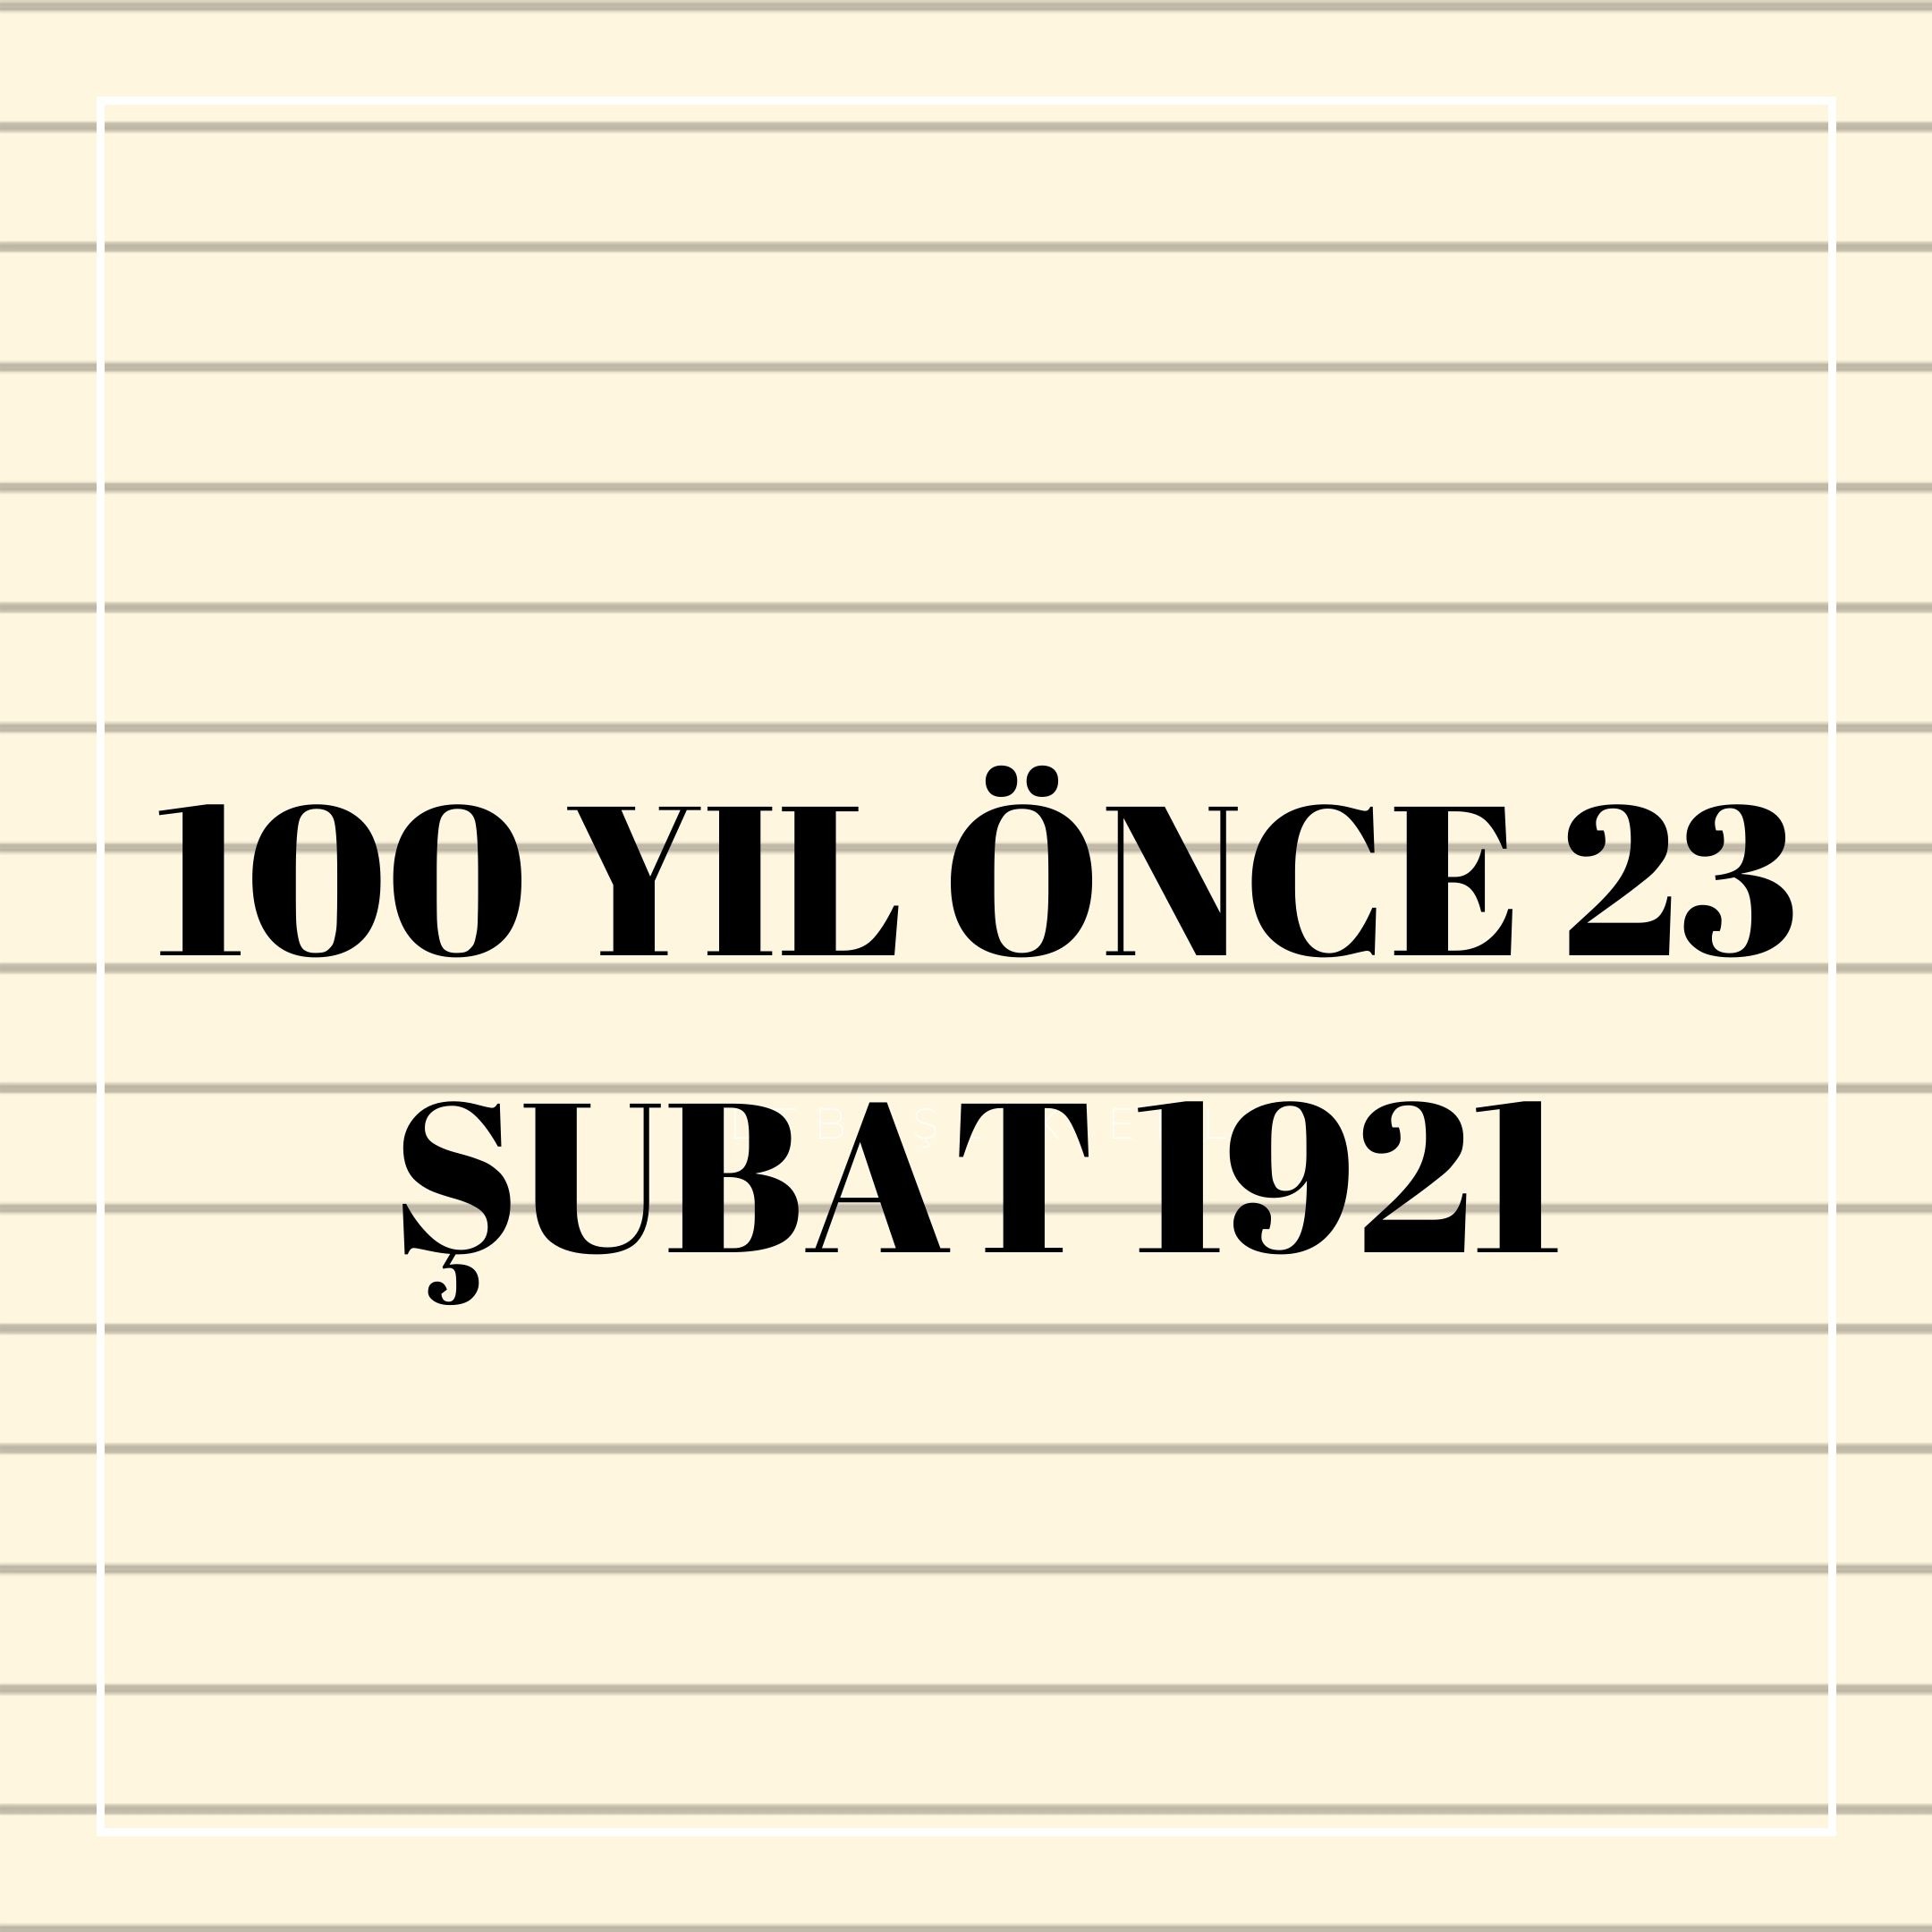 100 YIL ÖNCE 23 ŞUBAT 1921